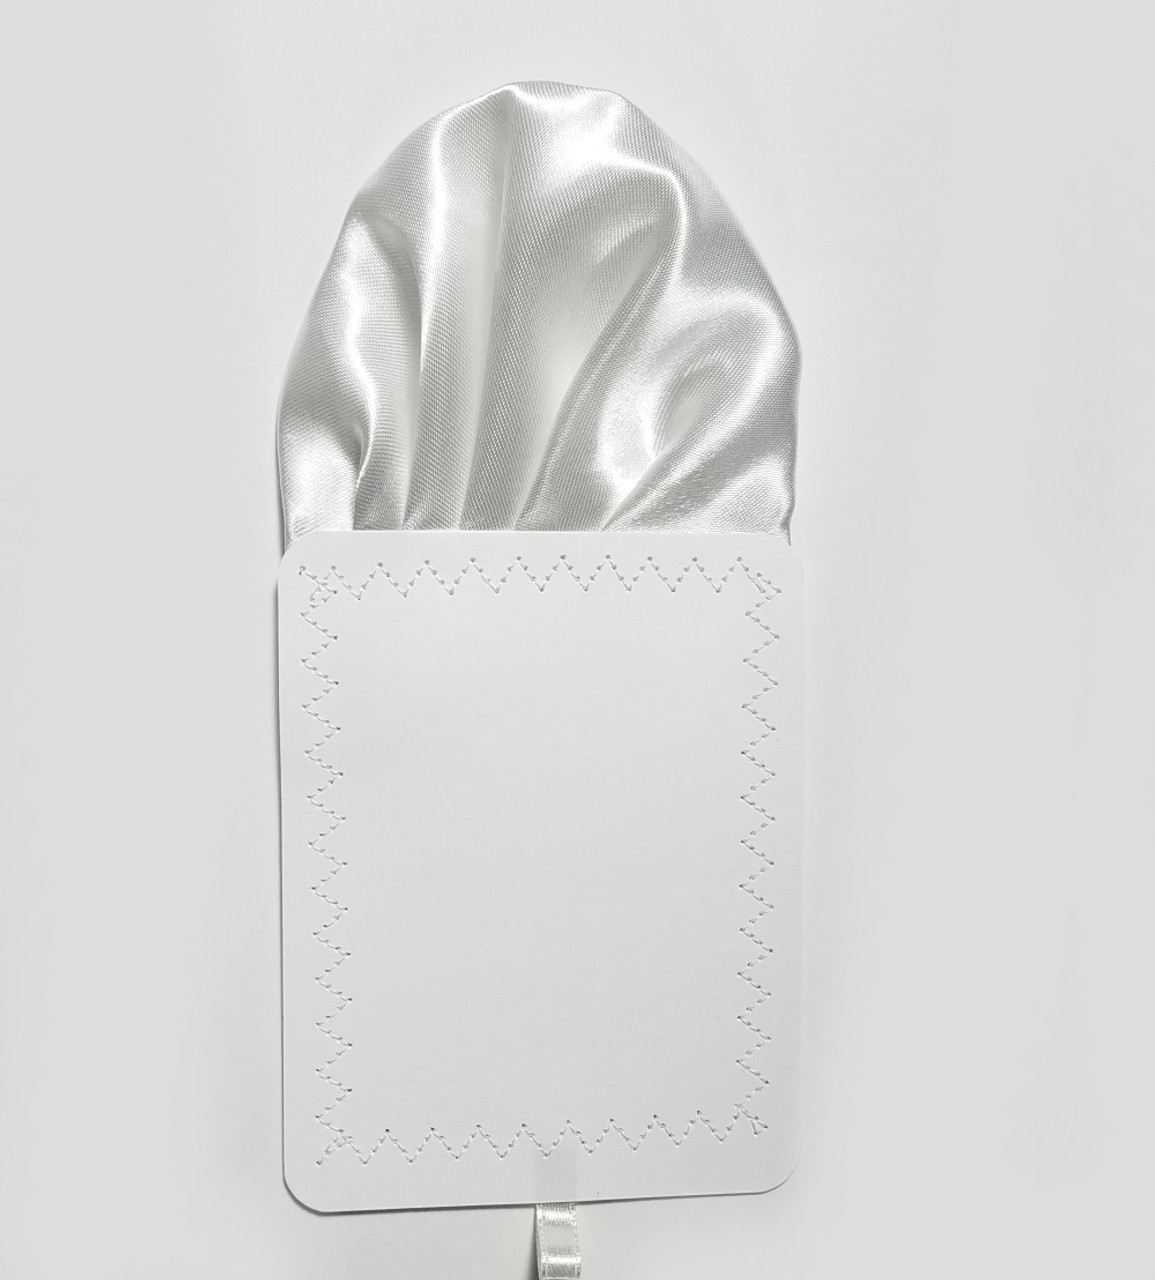 White Satin Pre-Folded Pocket Square Insert - Vavra's Menswear